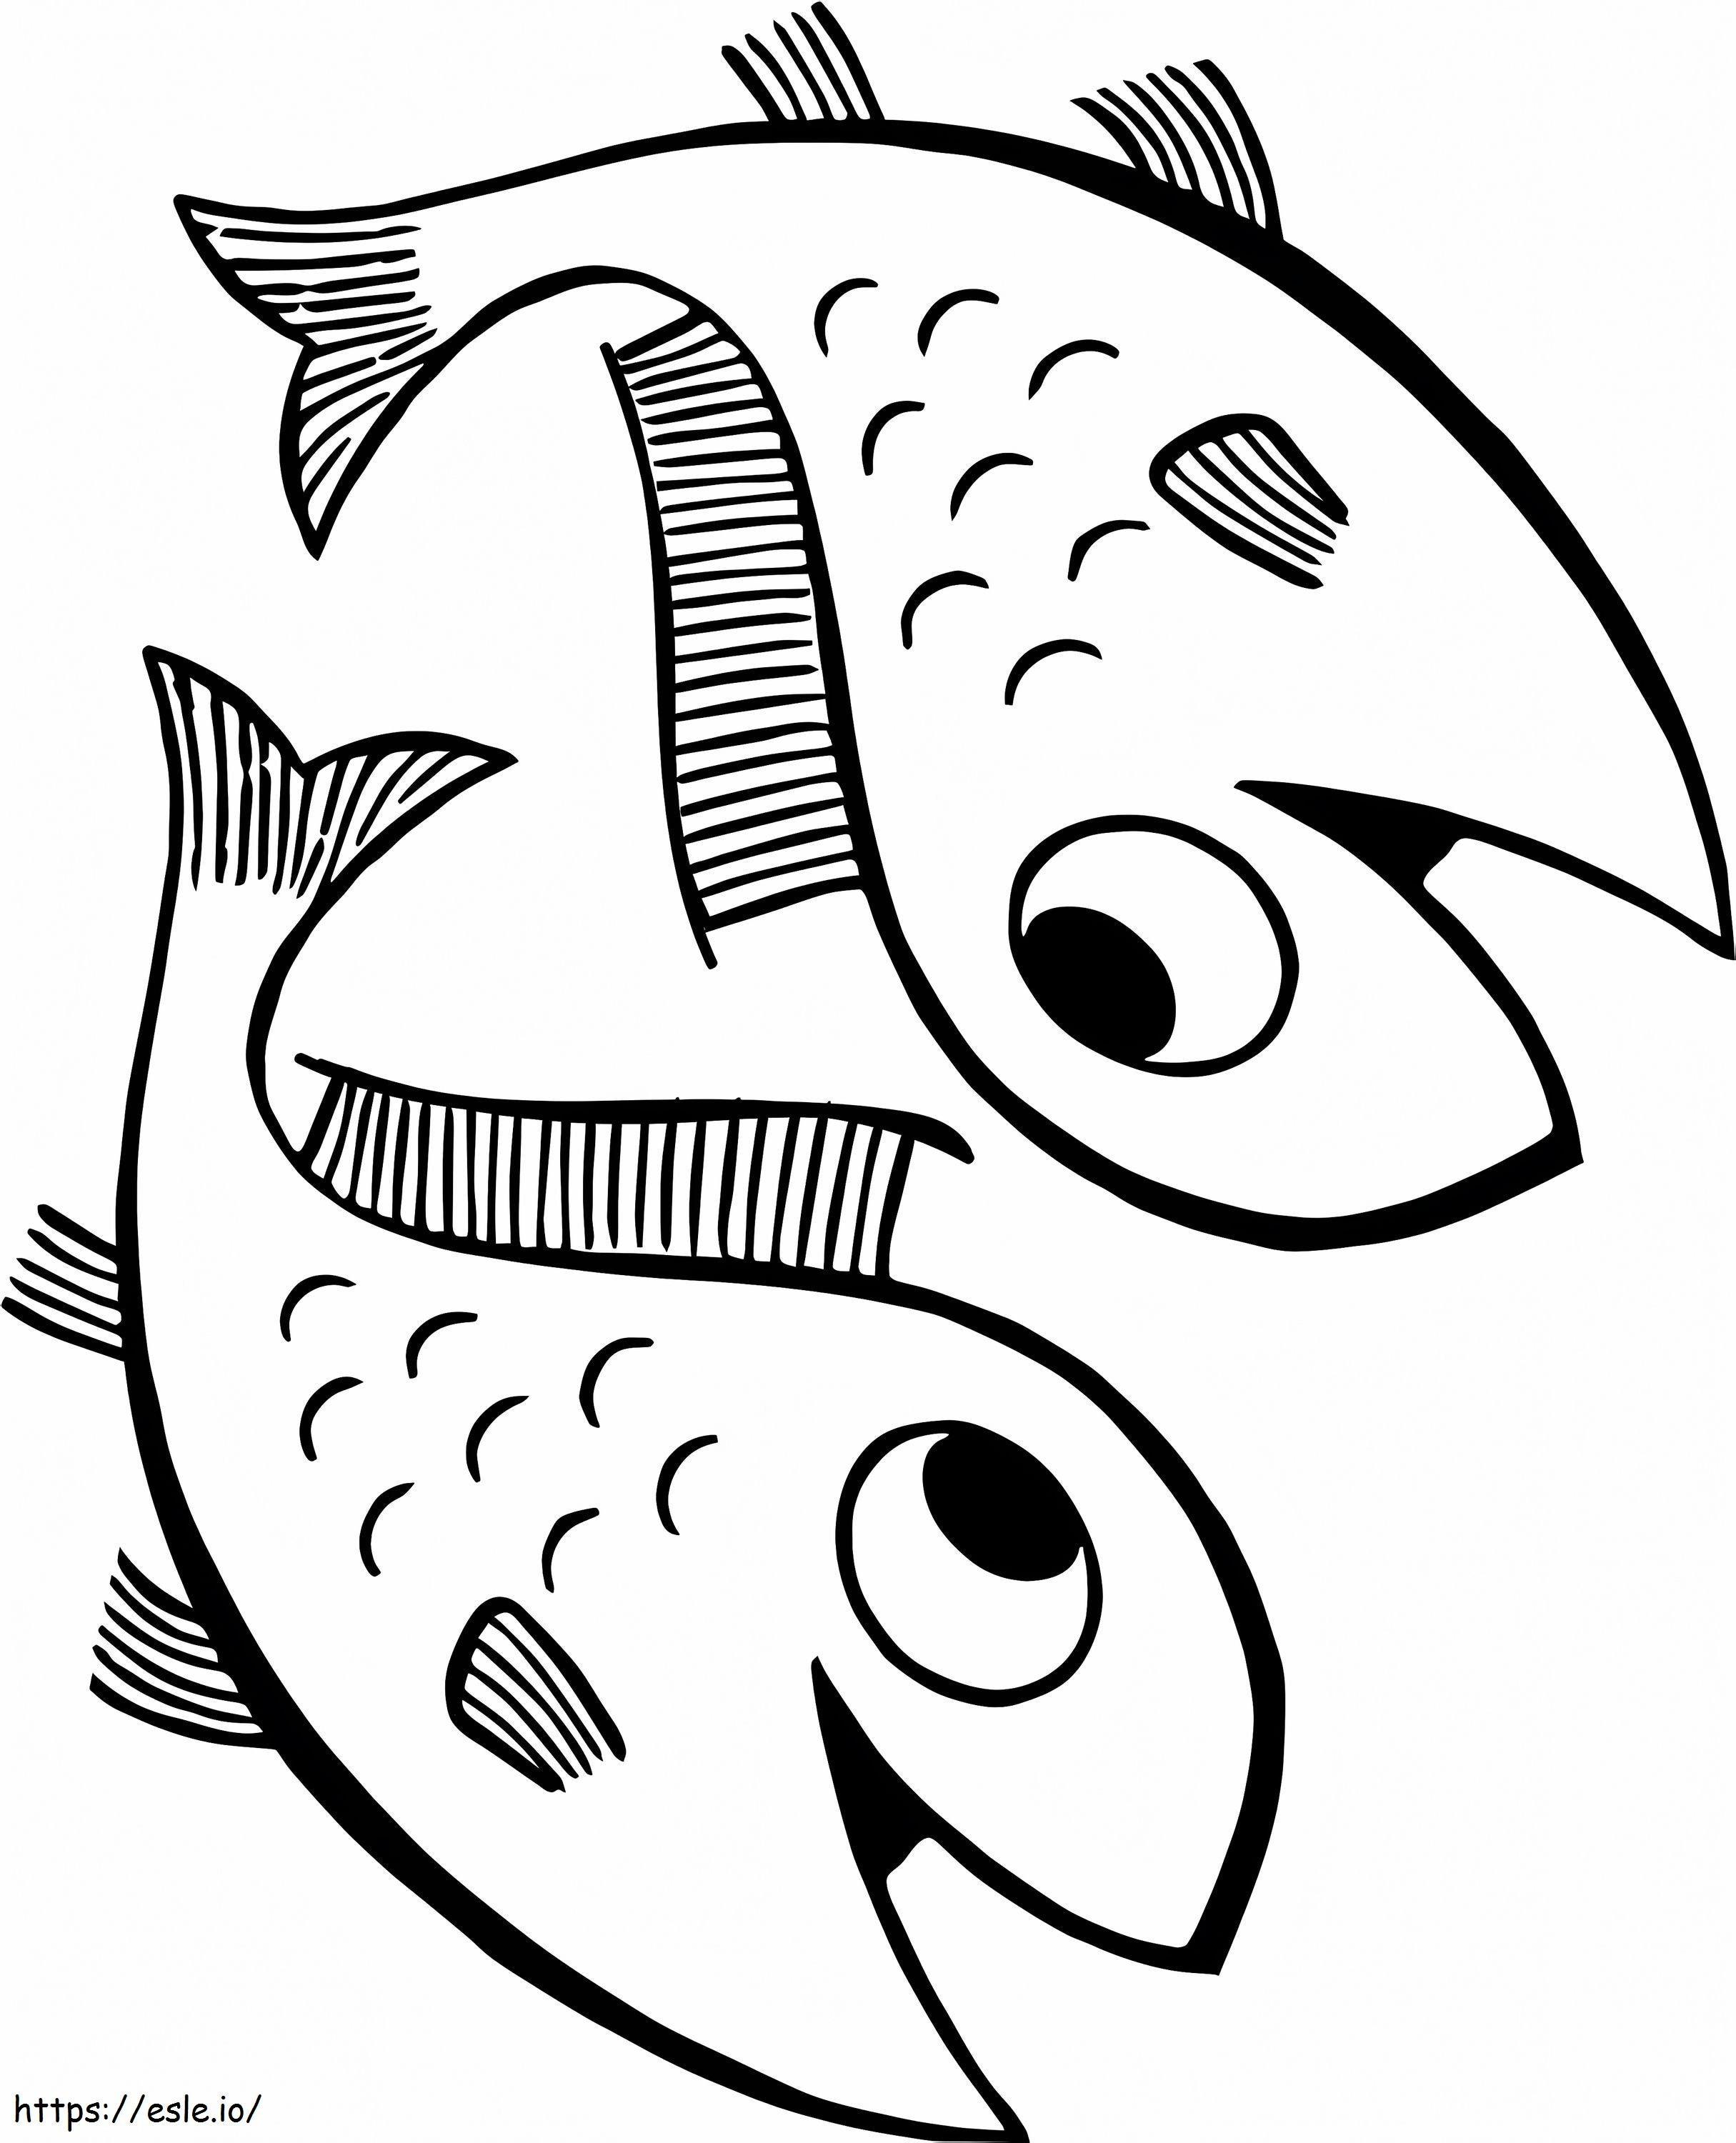 Coloriage Deux poissons heureux à imprimer dessin